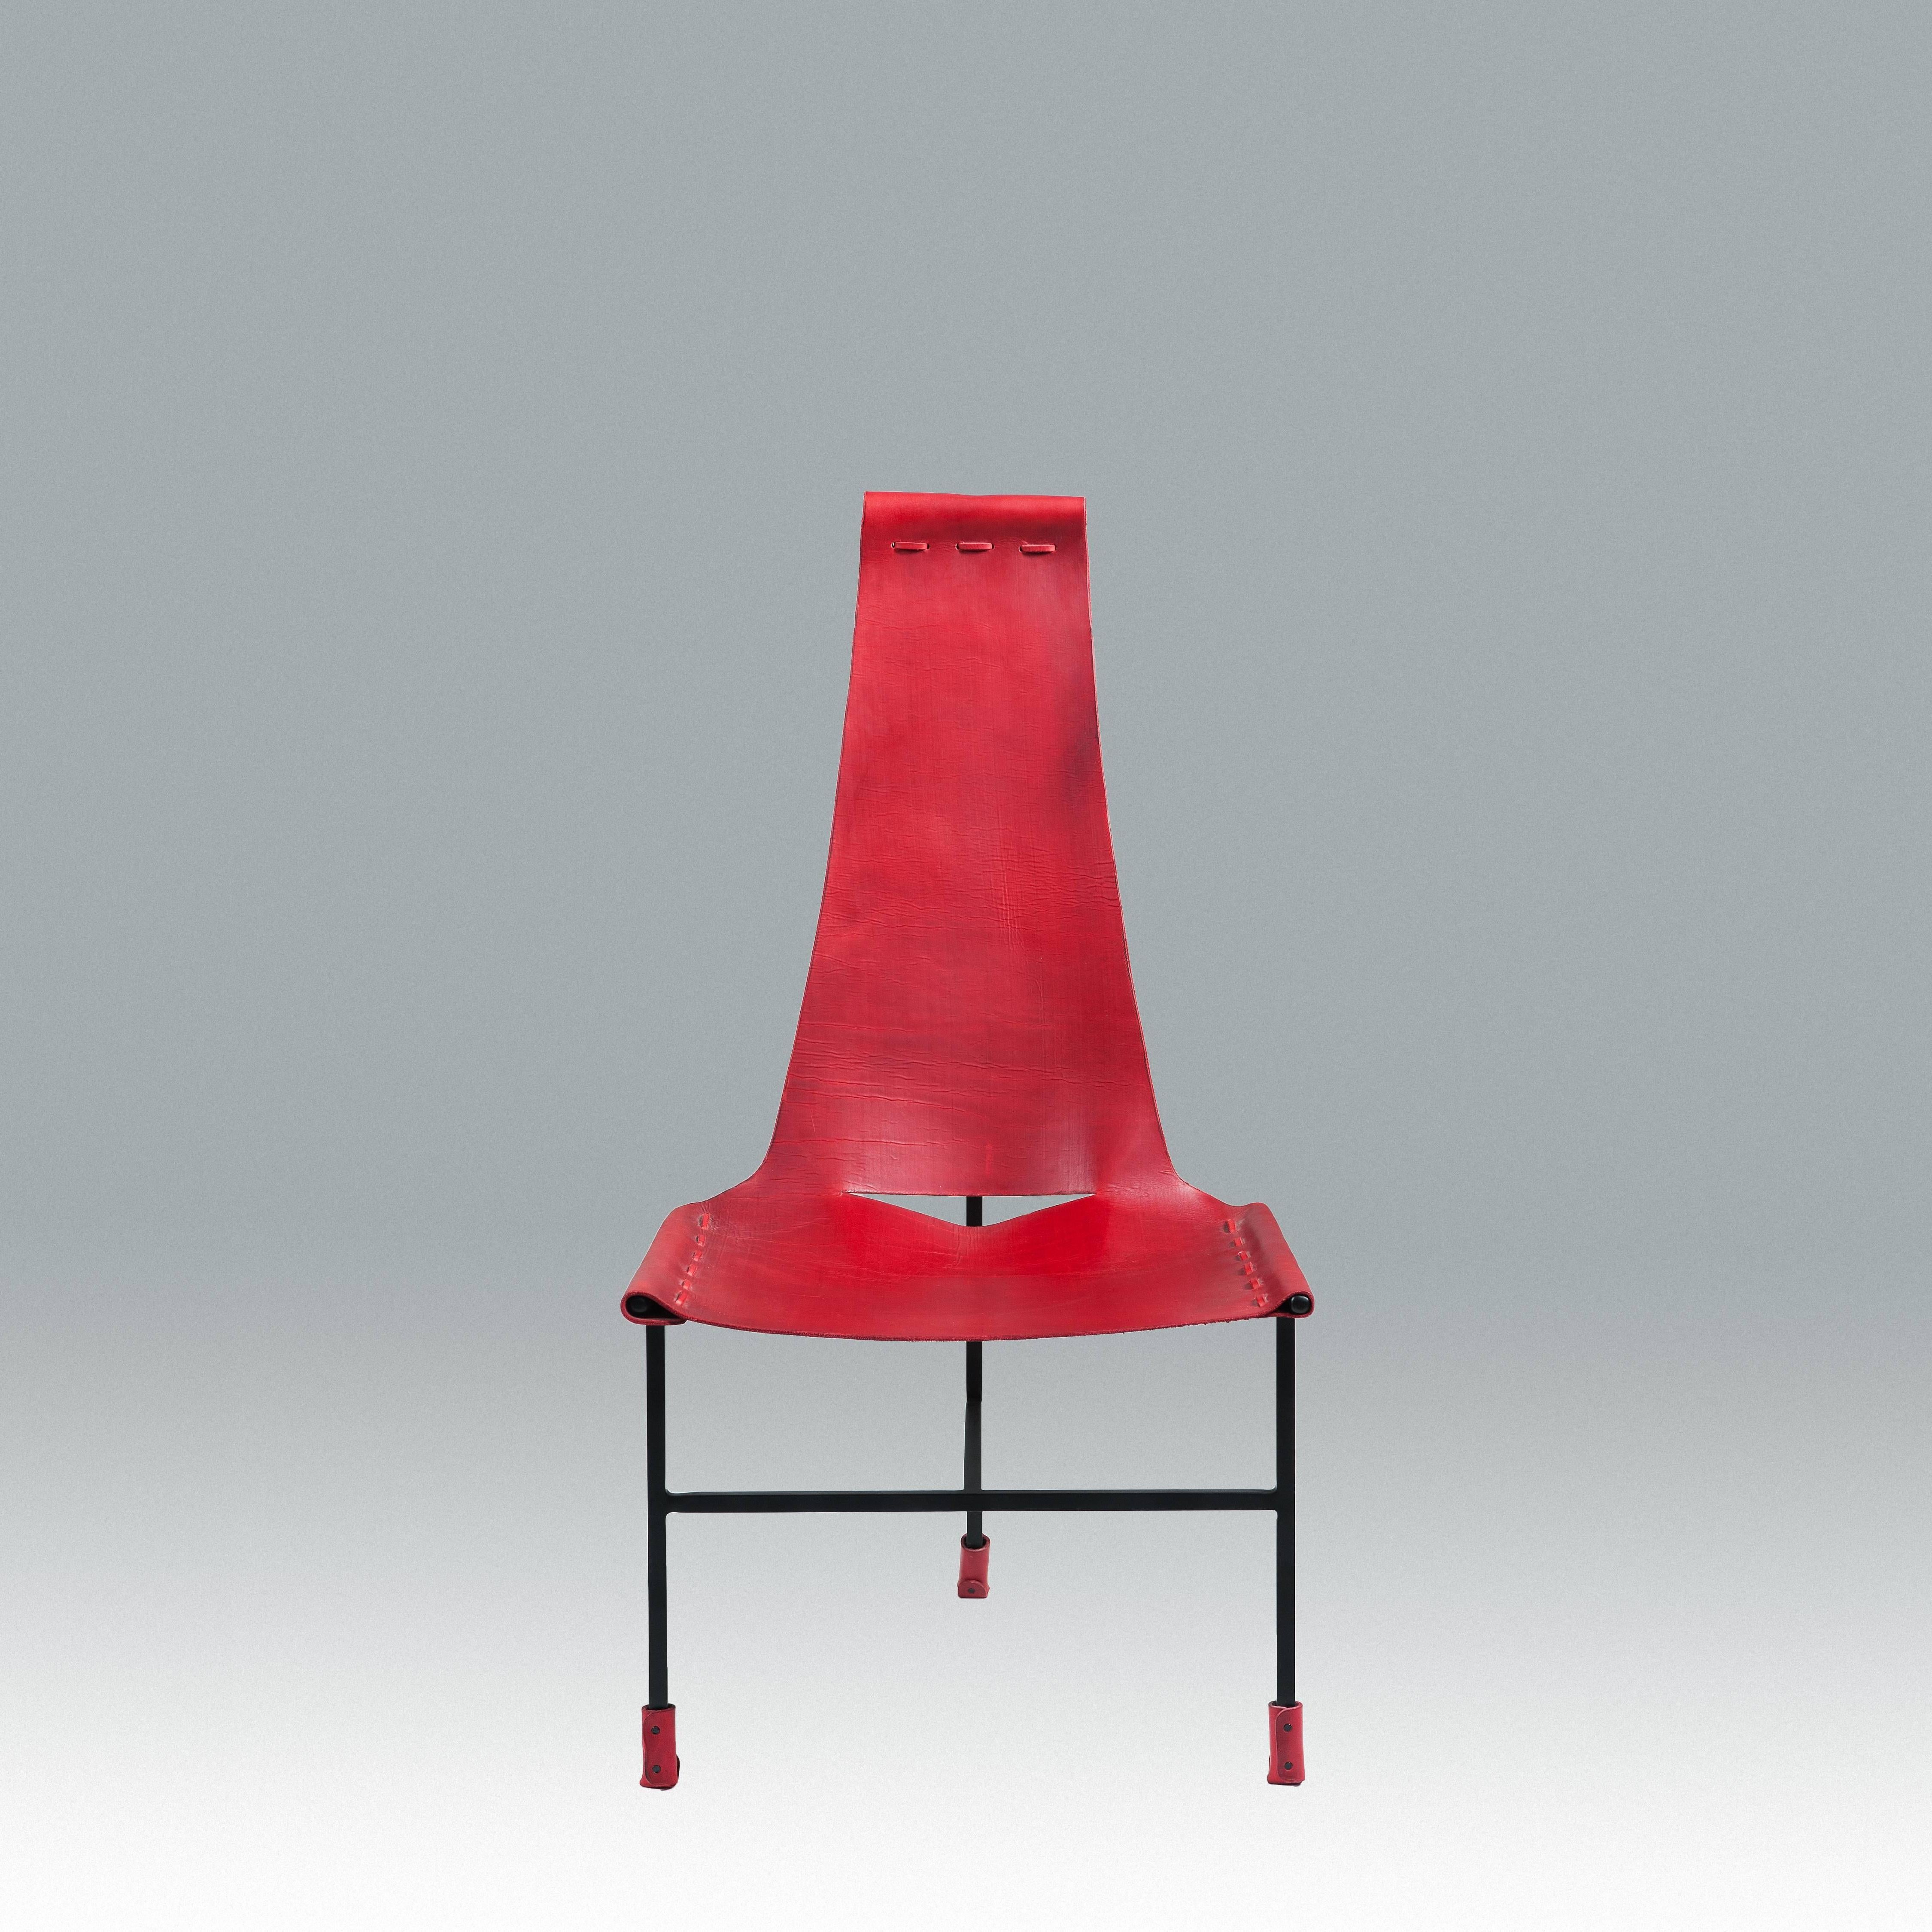 Wir bieten hier ein Set von zehn Dan Wenger Designs Esszimmerstühlen an. Das Leder kann in Schwarz, Cognac, Rot und Dunkelbraun gewählt werden. Der Rahmen ist schwarz lackiert. Die Lieferfrist beträgt etwa 14 Wochen.

